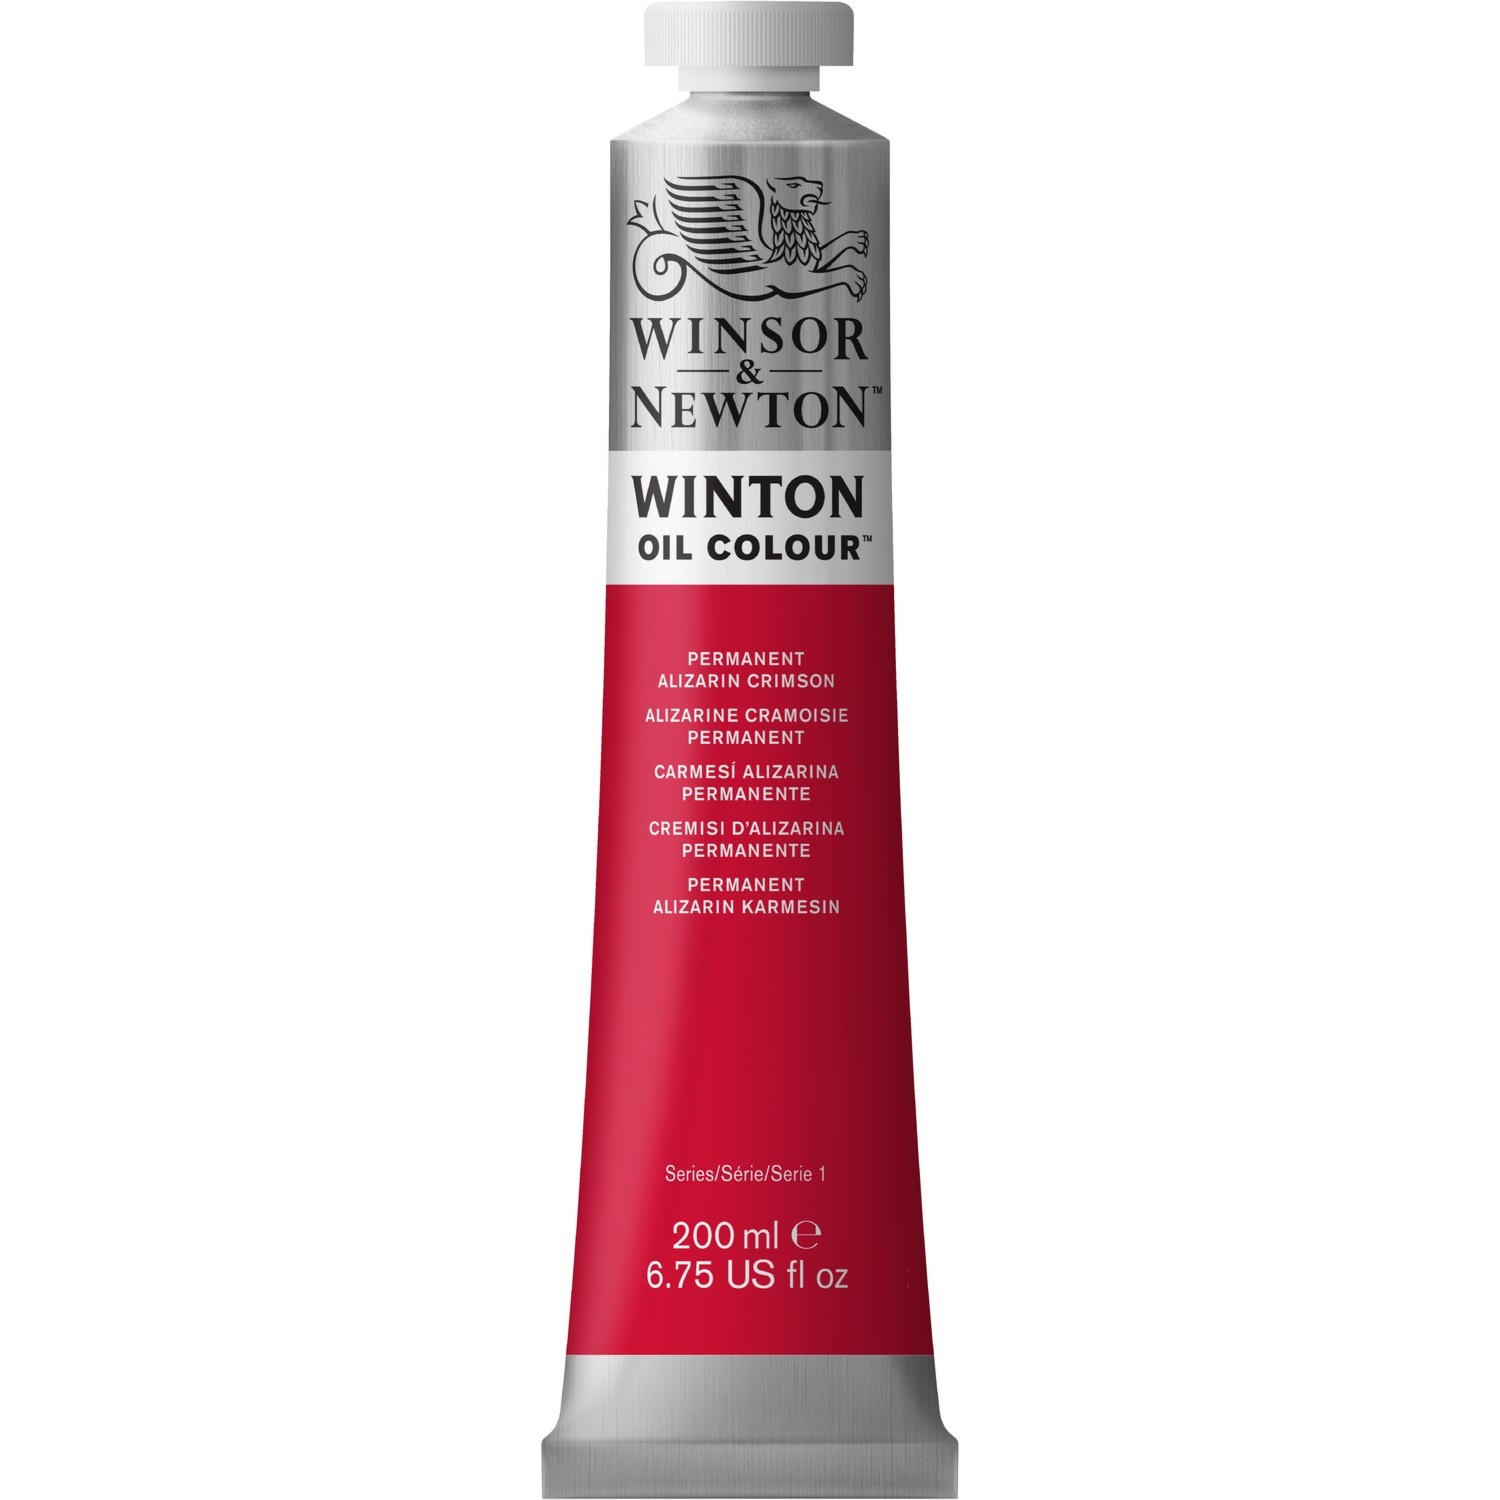 Winsor and Newton 200ml Winton Oil Colours - Alizarin crimson Image 1